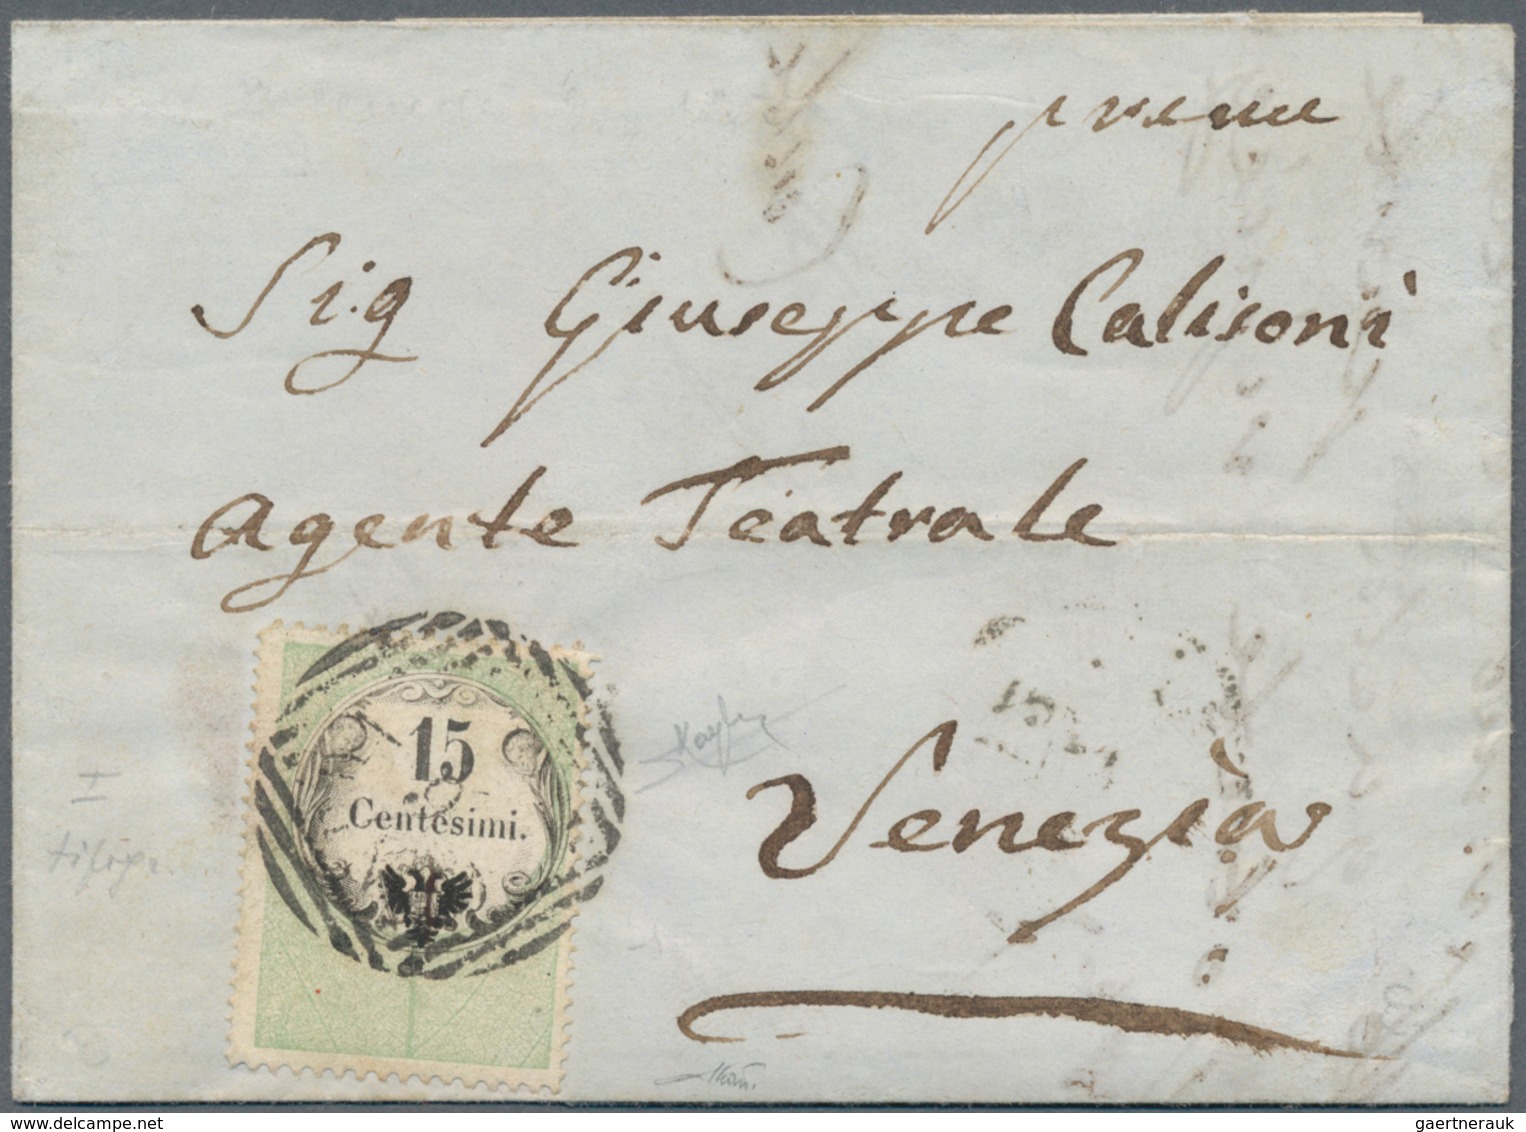 Österreich - Lombardei Und Venetien - Stempelmarken: 1854, 15 C Grün/schwarz, Buchdruck, Entwertet M - Lombardy-Venetia